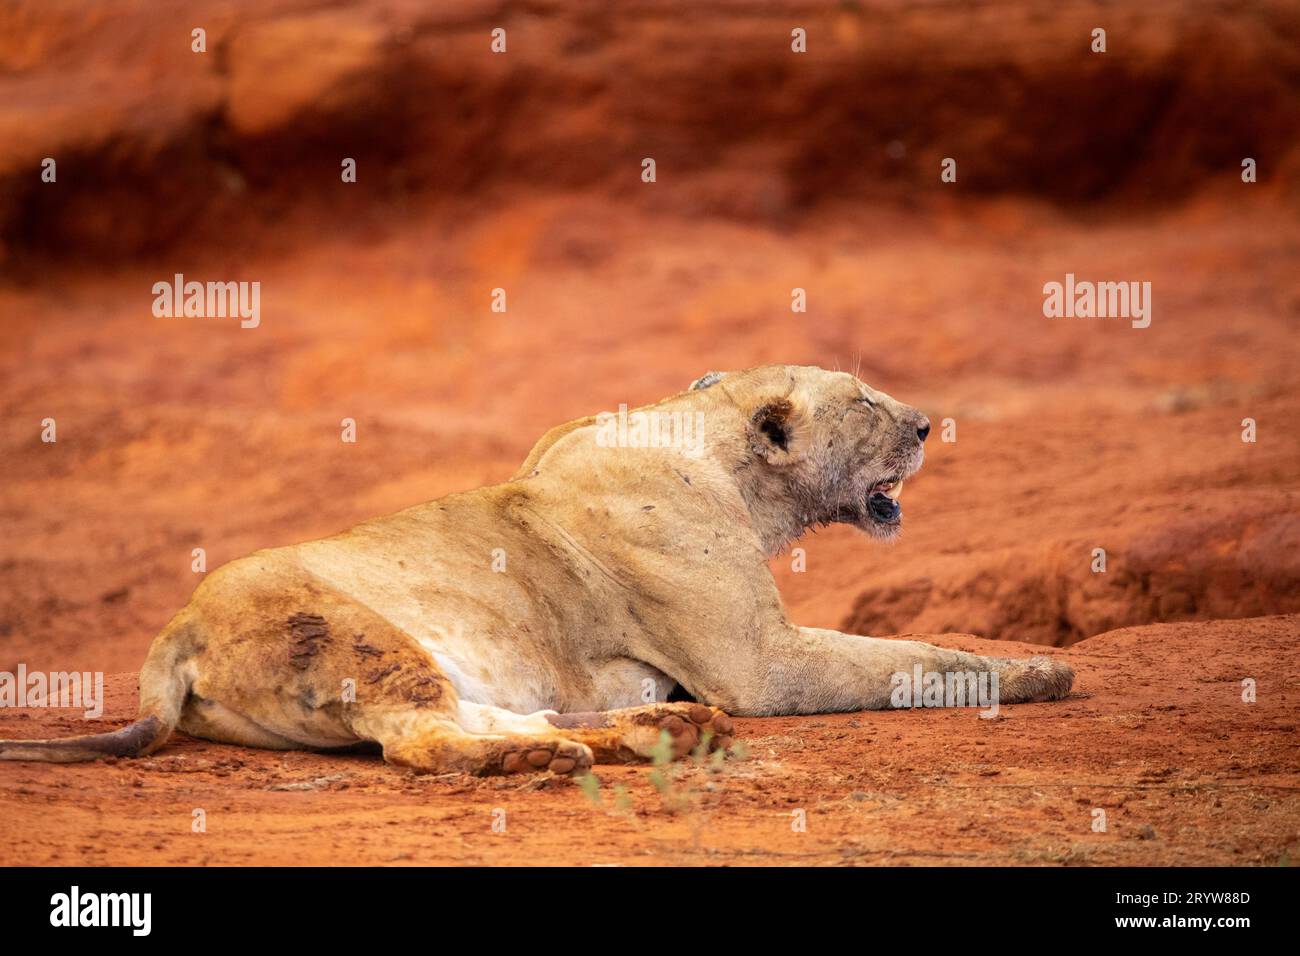 Rencontre avec la faune au Kenya : des lions féminins et un buffle d'eau abattu Banque D'Images